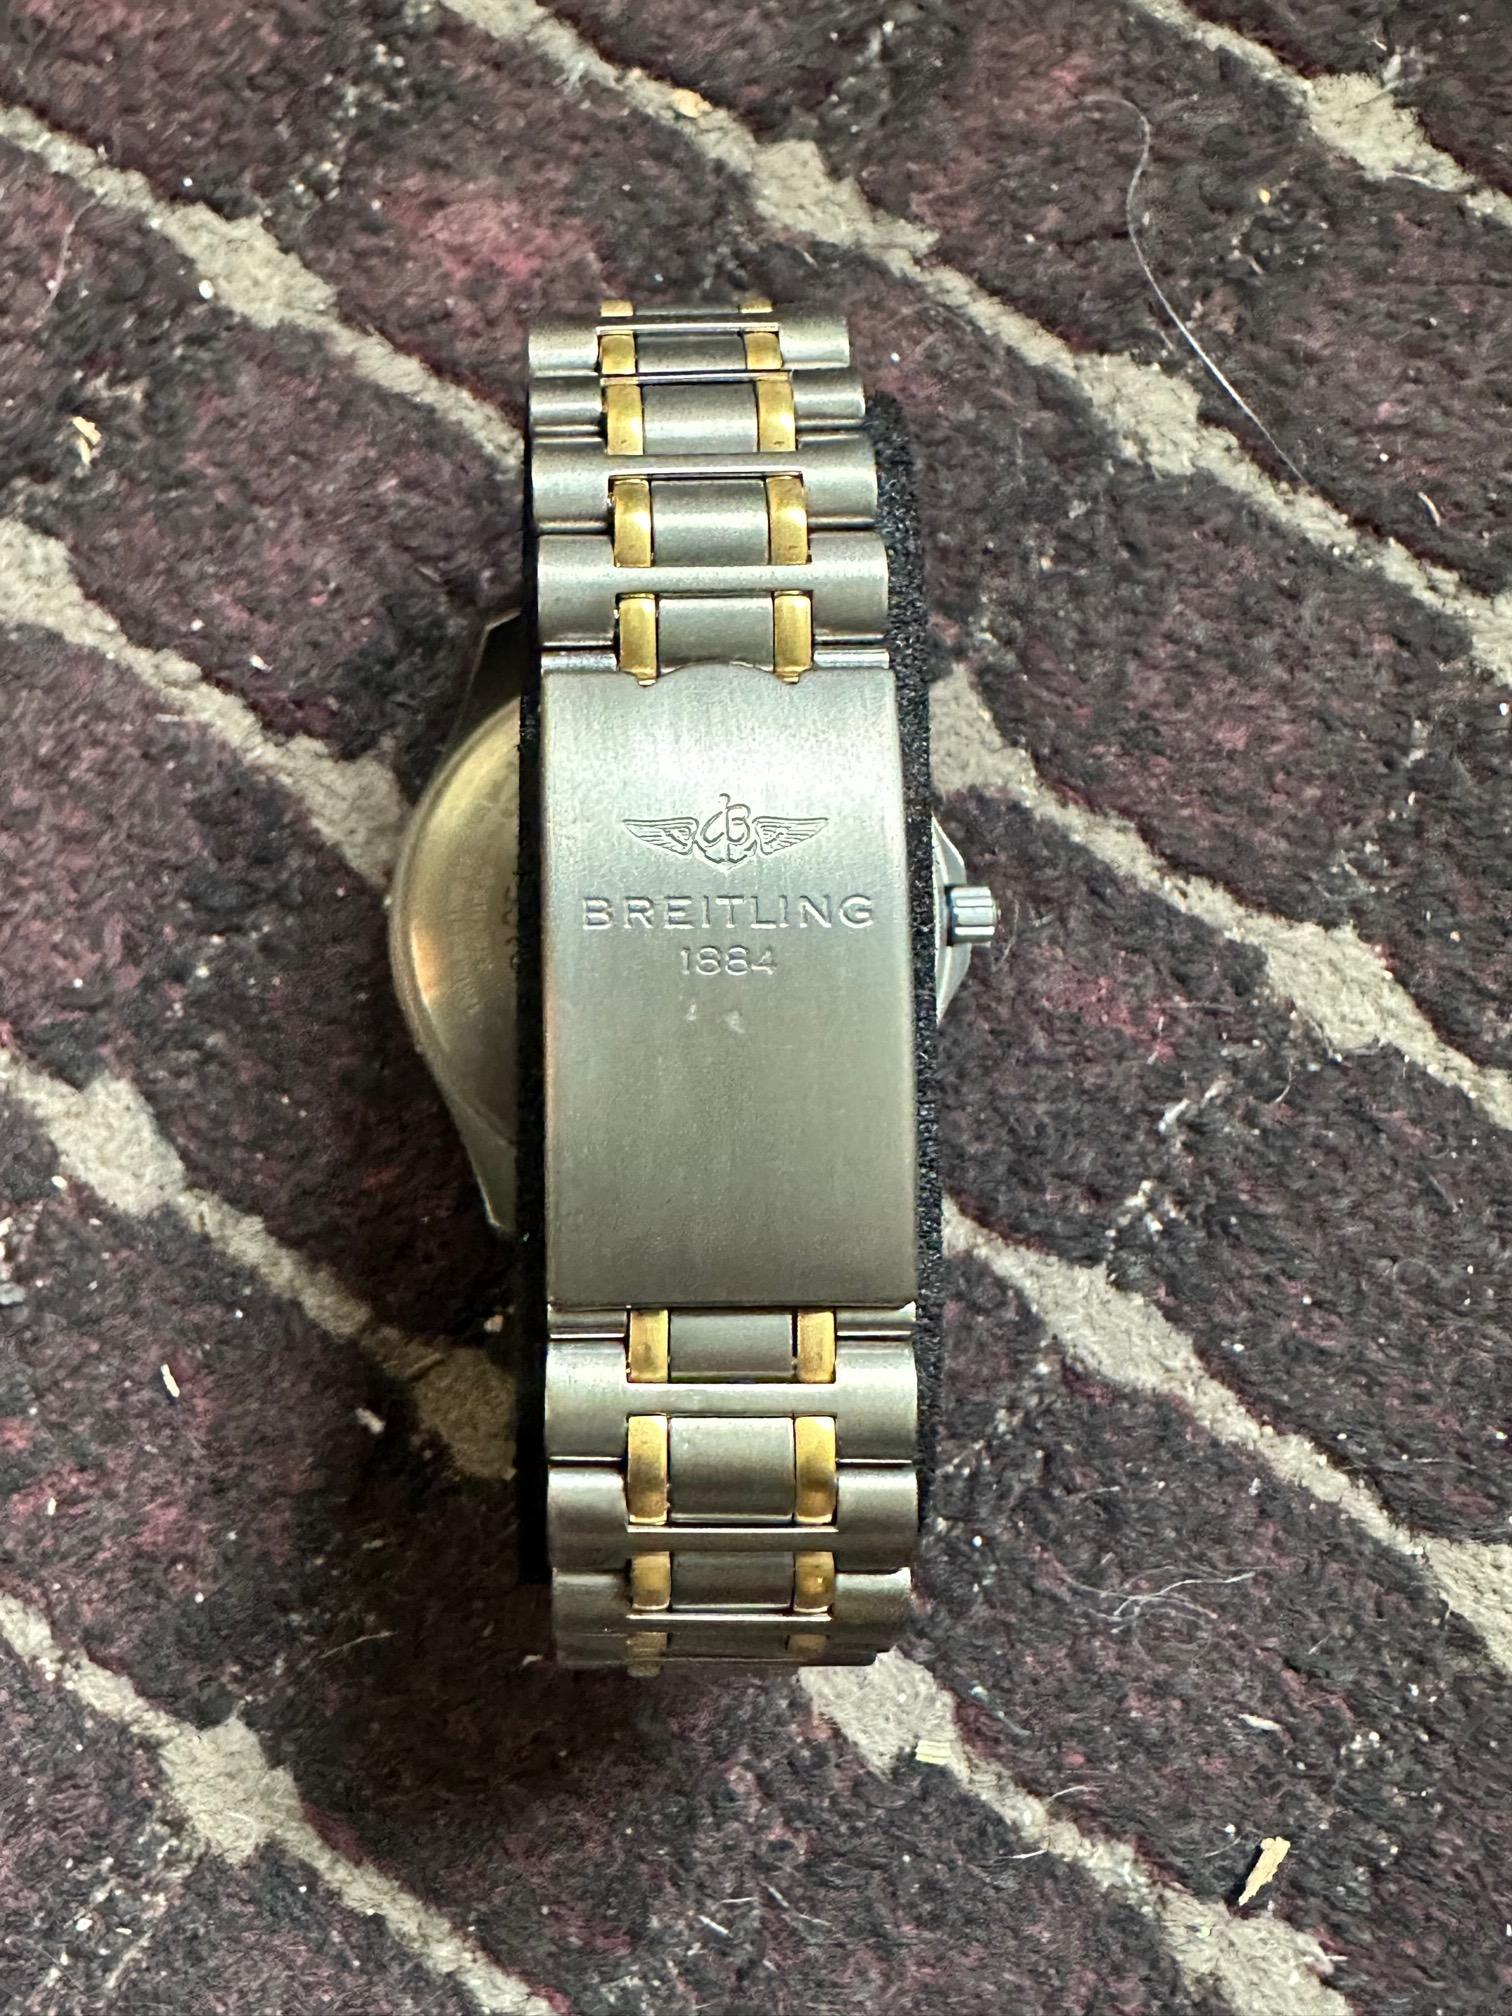 Breitling Aerospace 100m Titanium Case & Bracelet W/ Black Dial Chronograph  For Sale 6